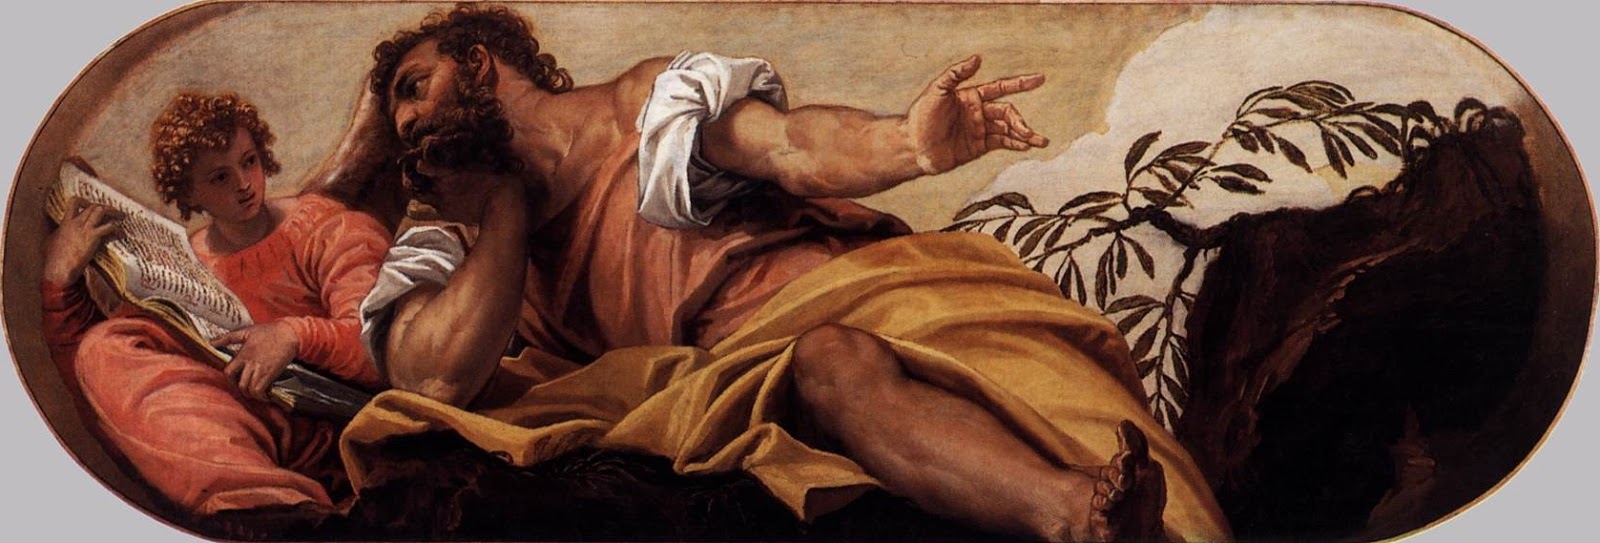 Paolo+Veronese-1528-1588 (16).jpg